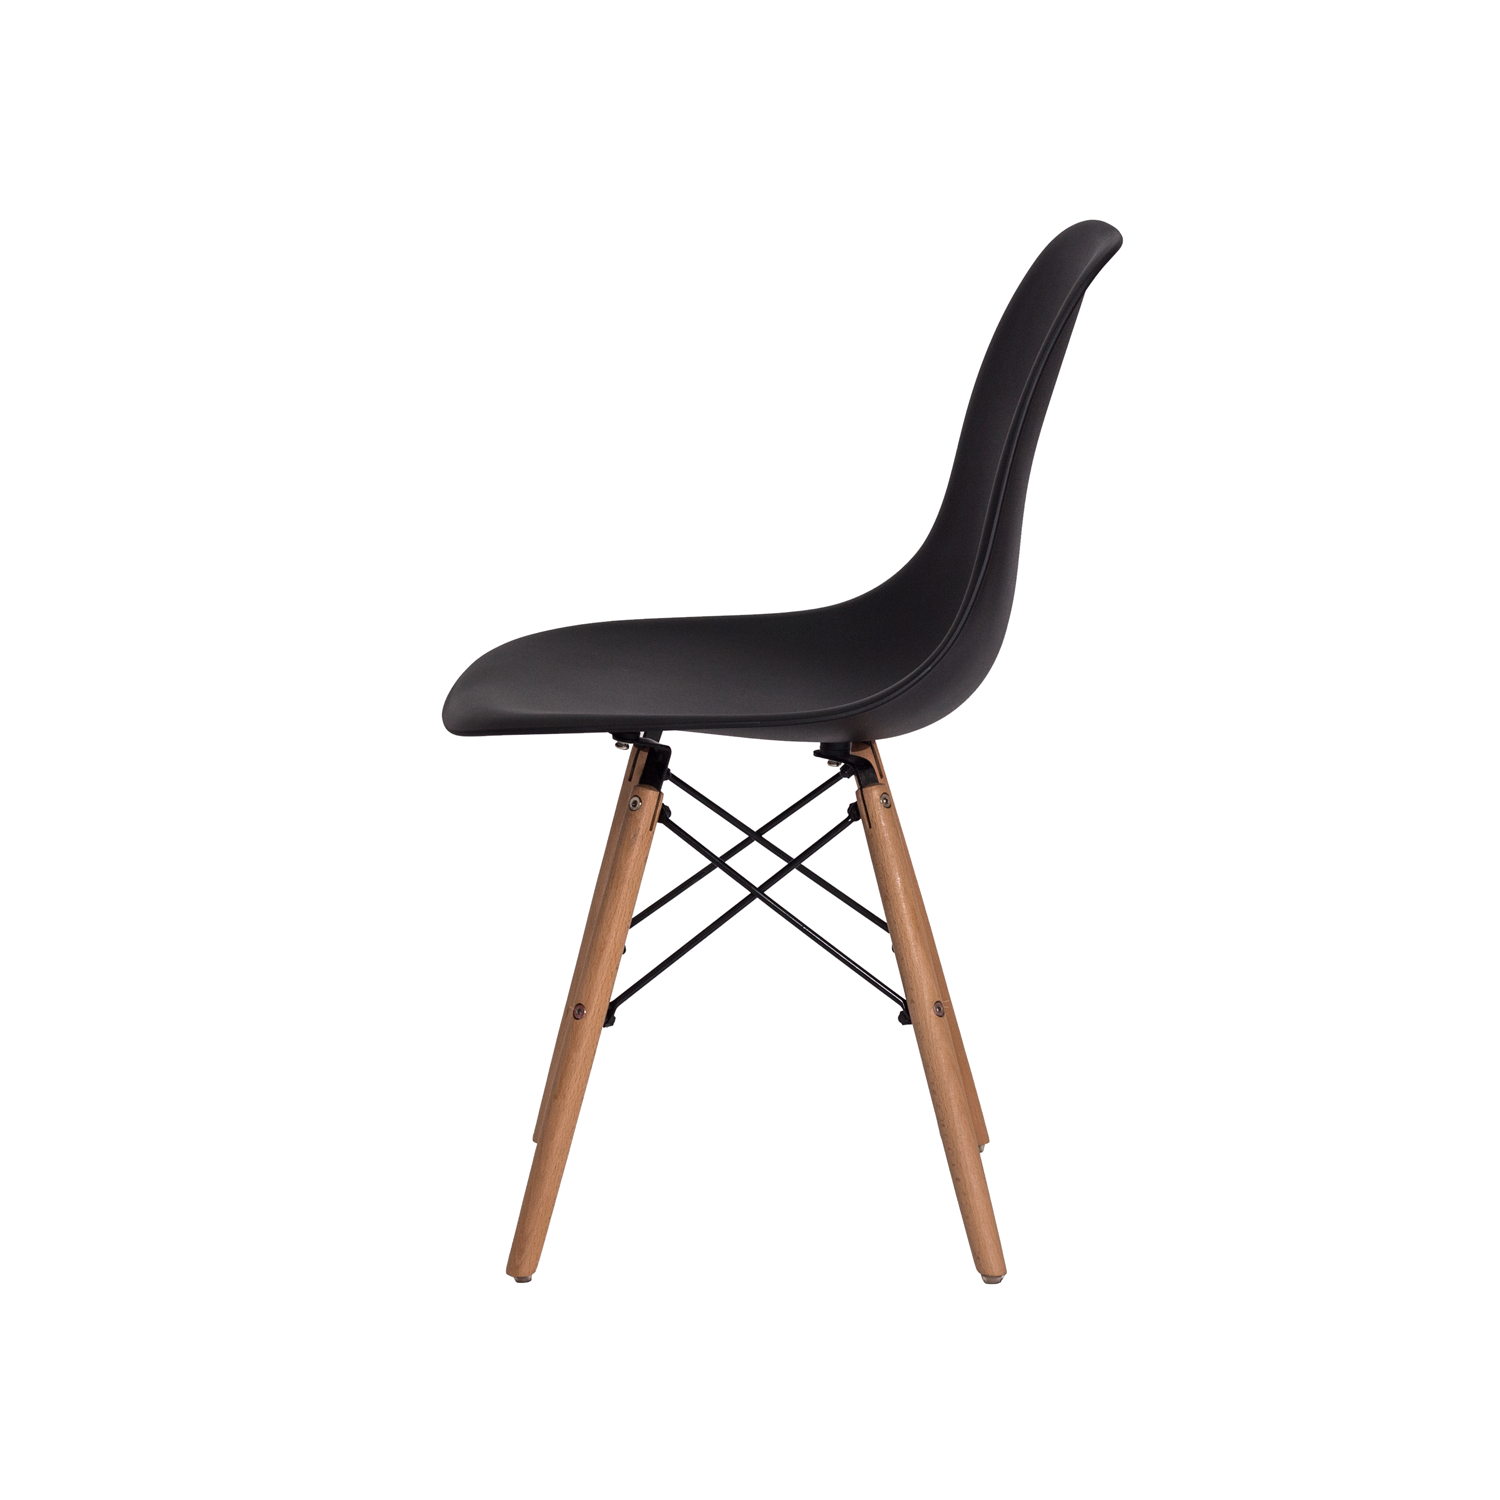 Kit 4 Cadeiras Charles Eames Eiffel - Preta Kza Bela - 4